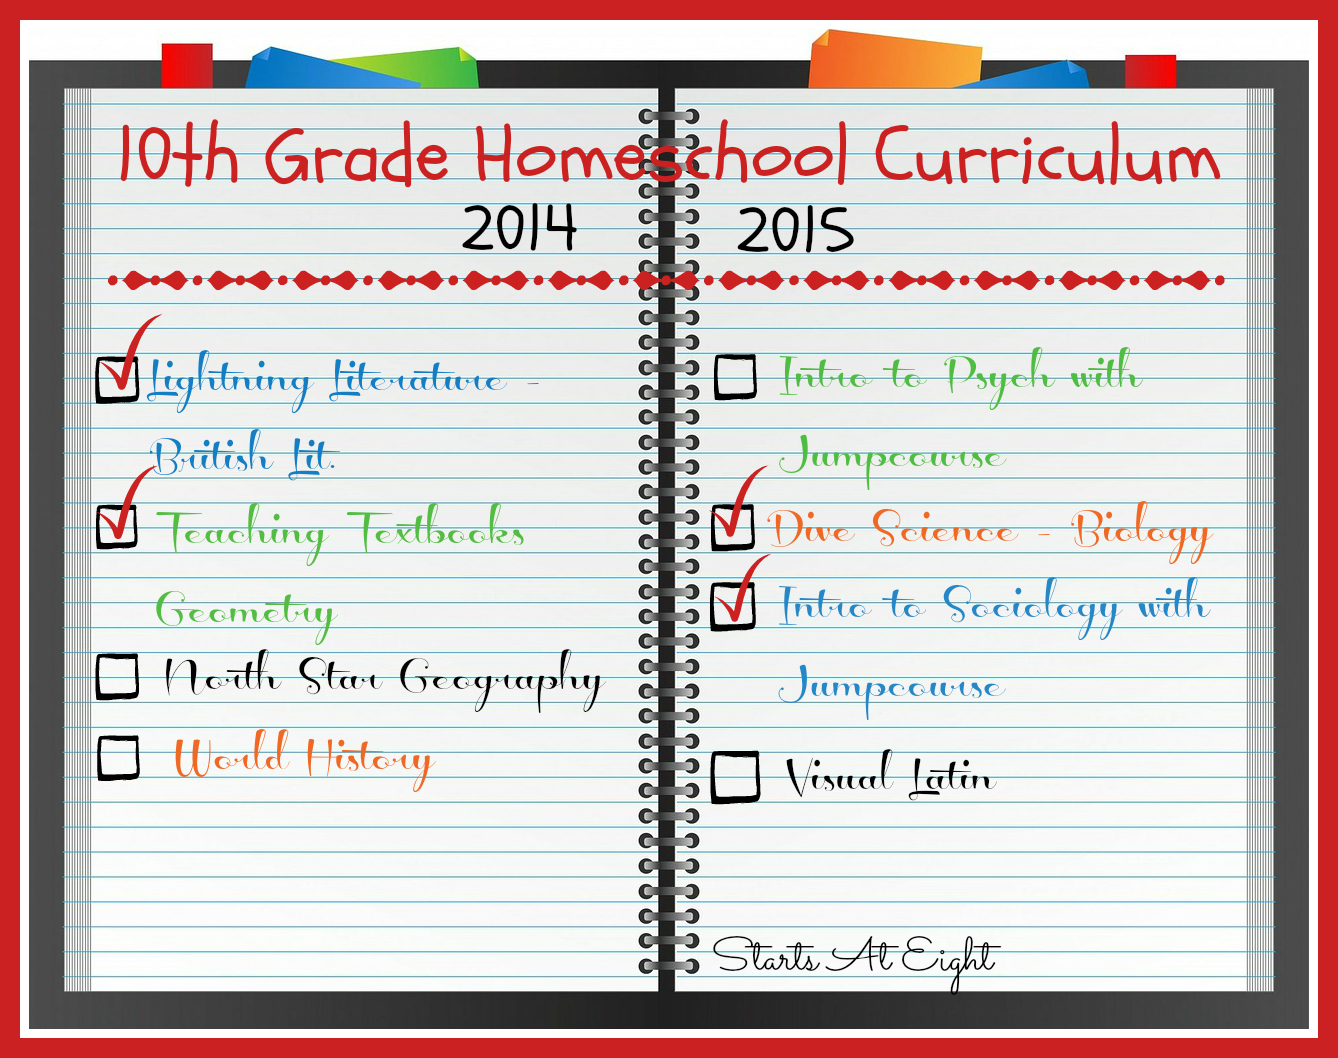 10th-grade-homeschool-curriculum-2014-2015-startsateight